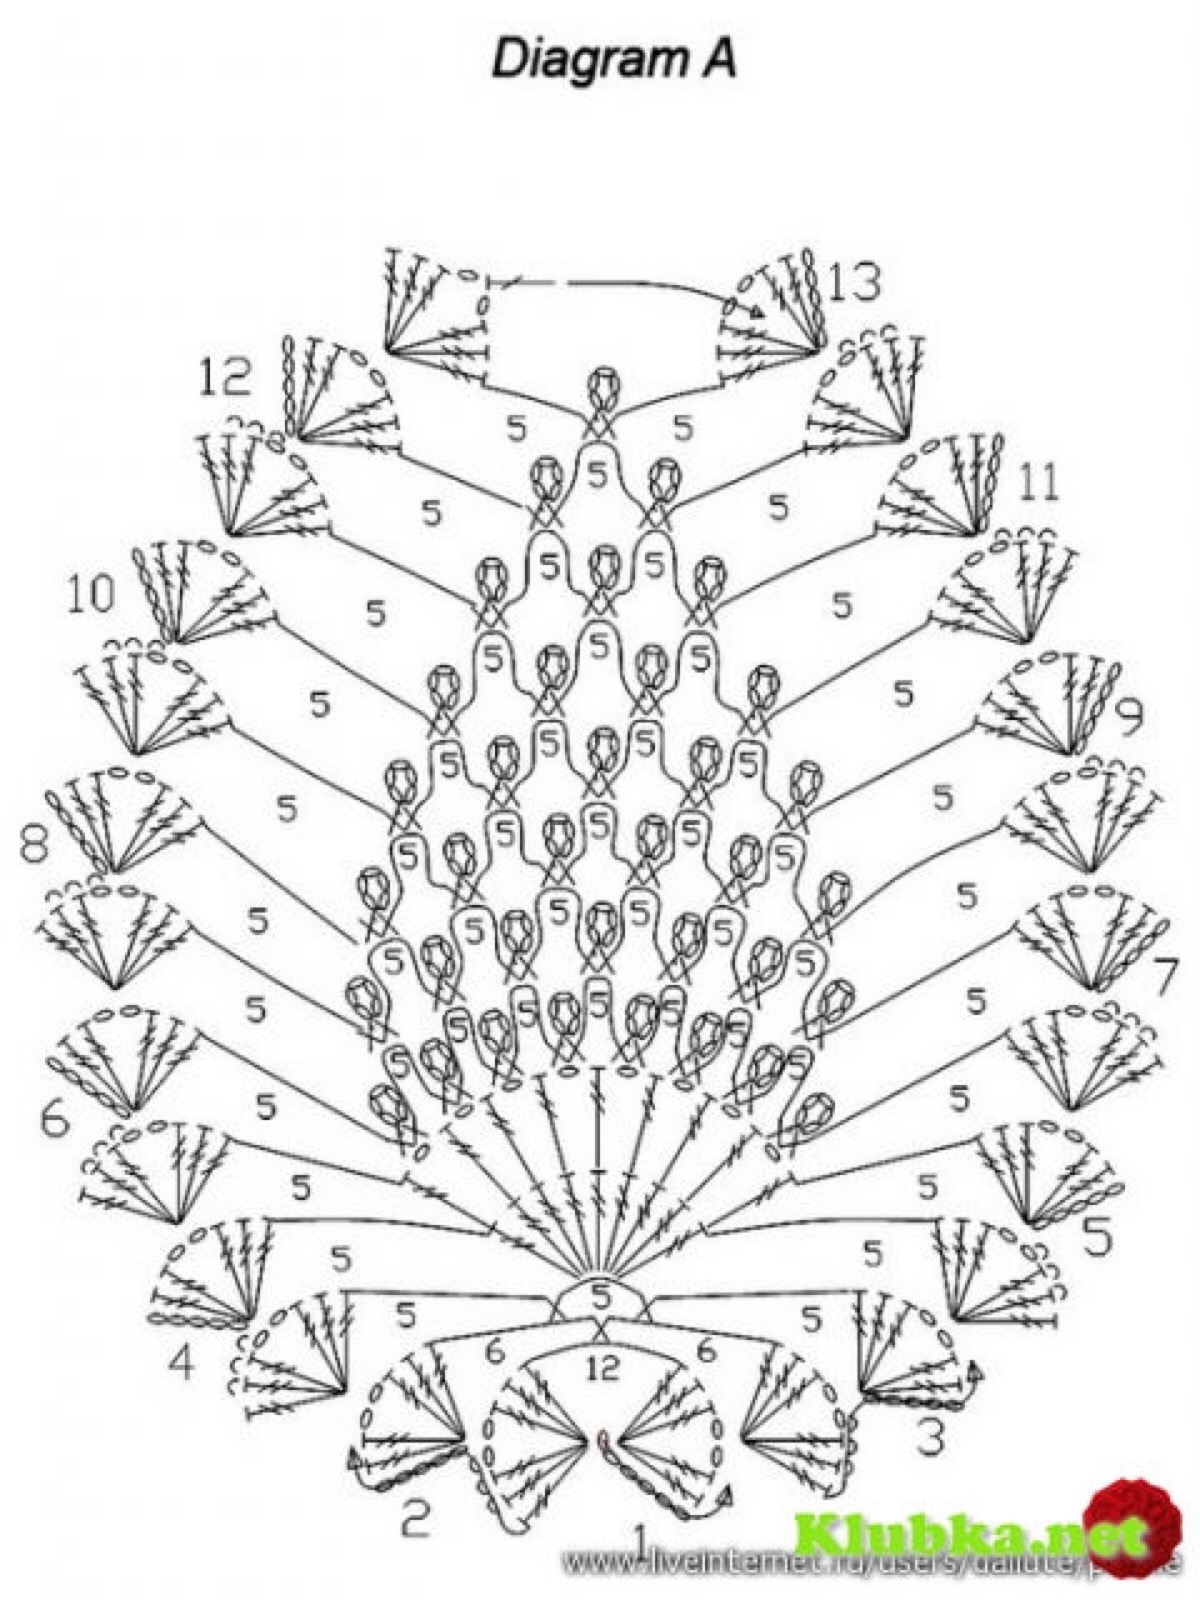 菠萝花的织法详细图解图片